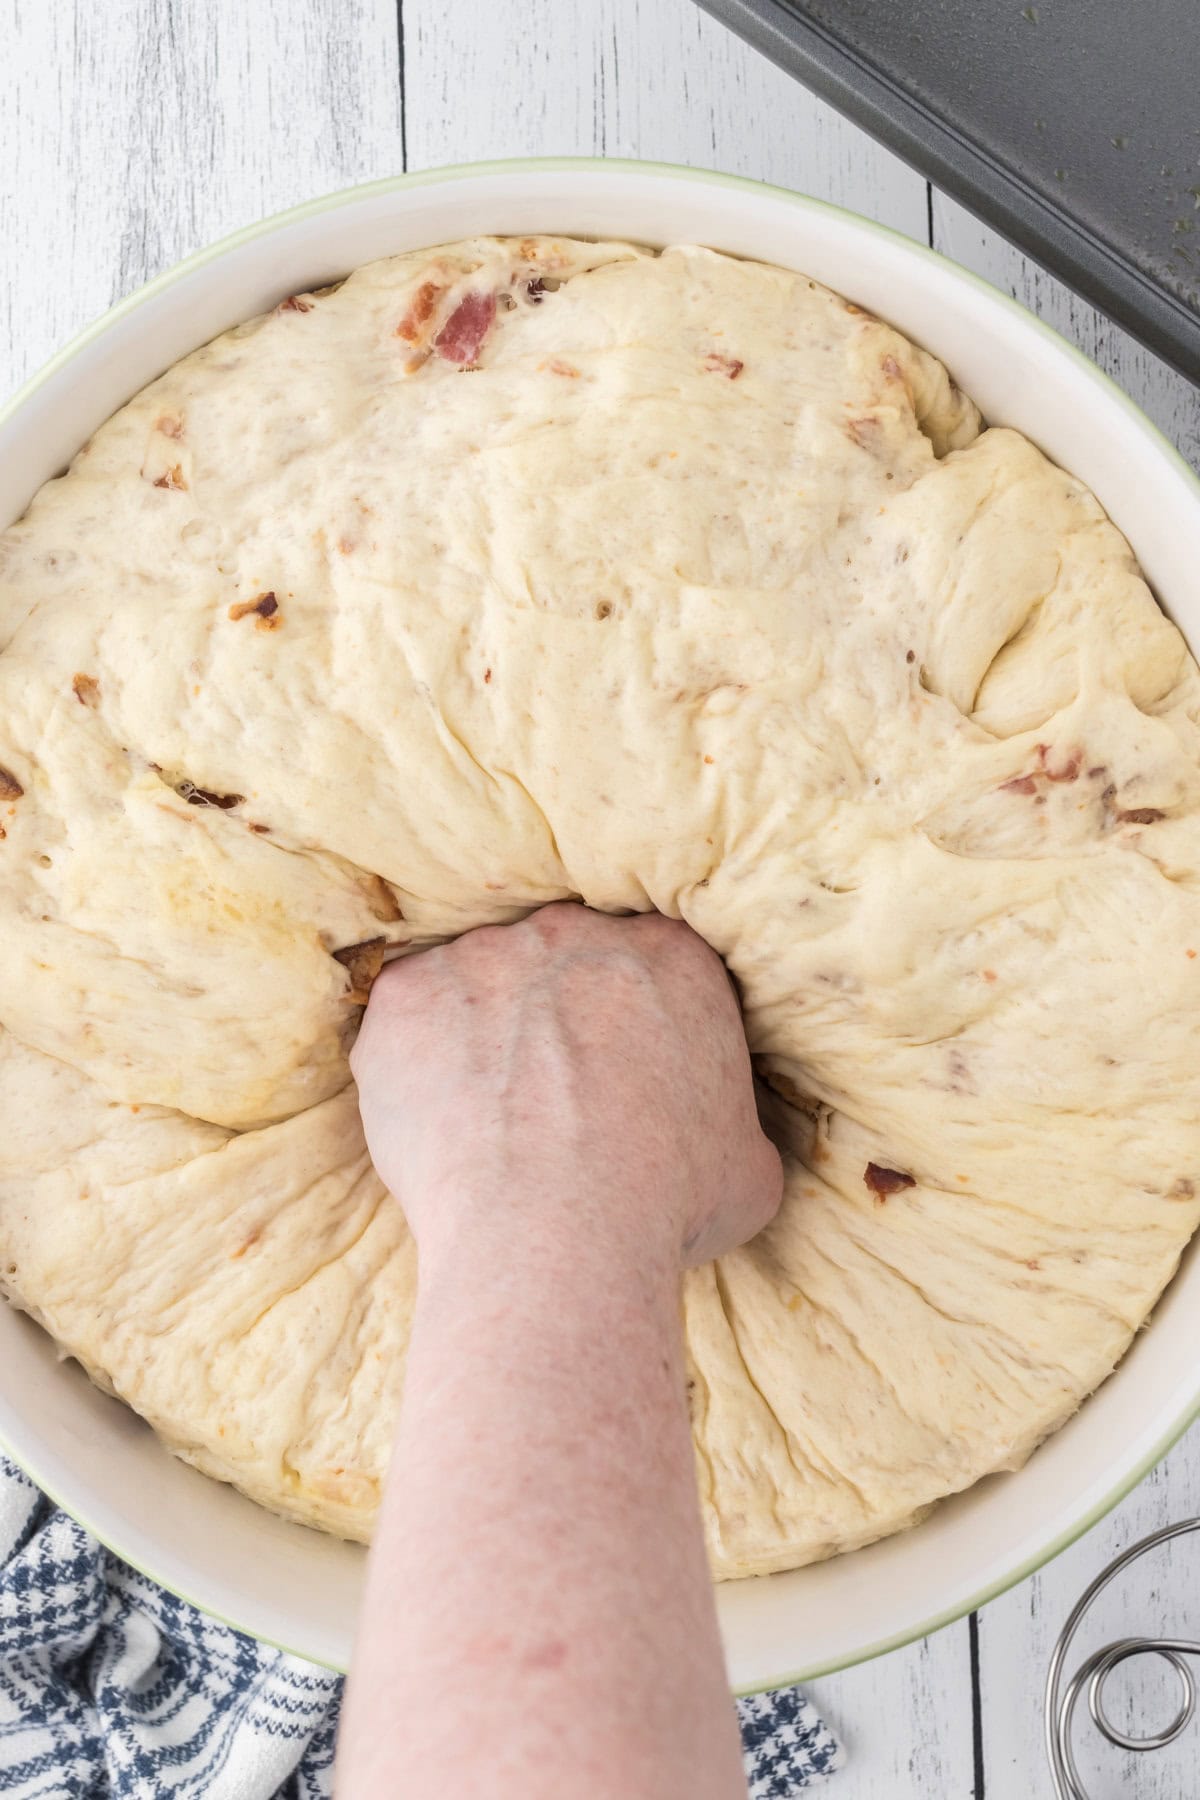 Punching down risen dough.